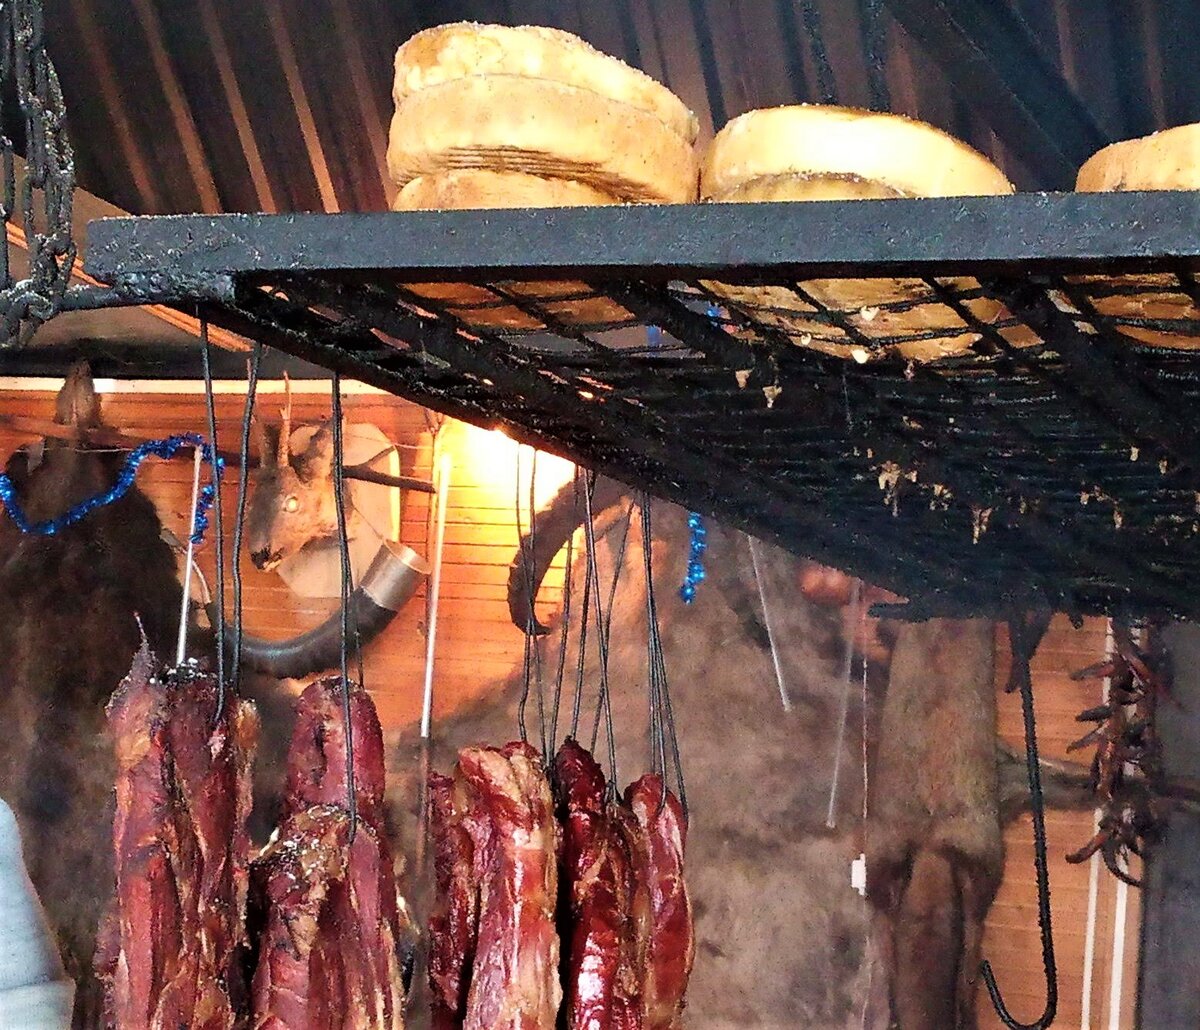 мясо по абхазски фото